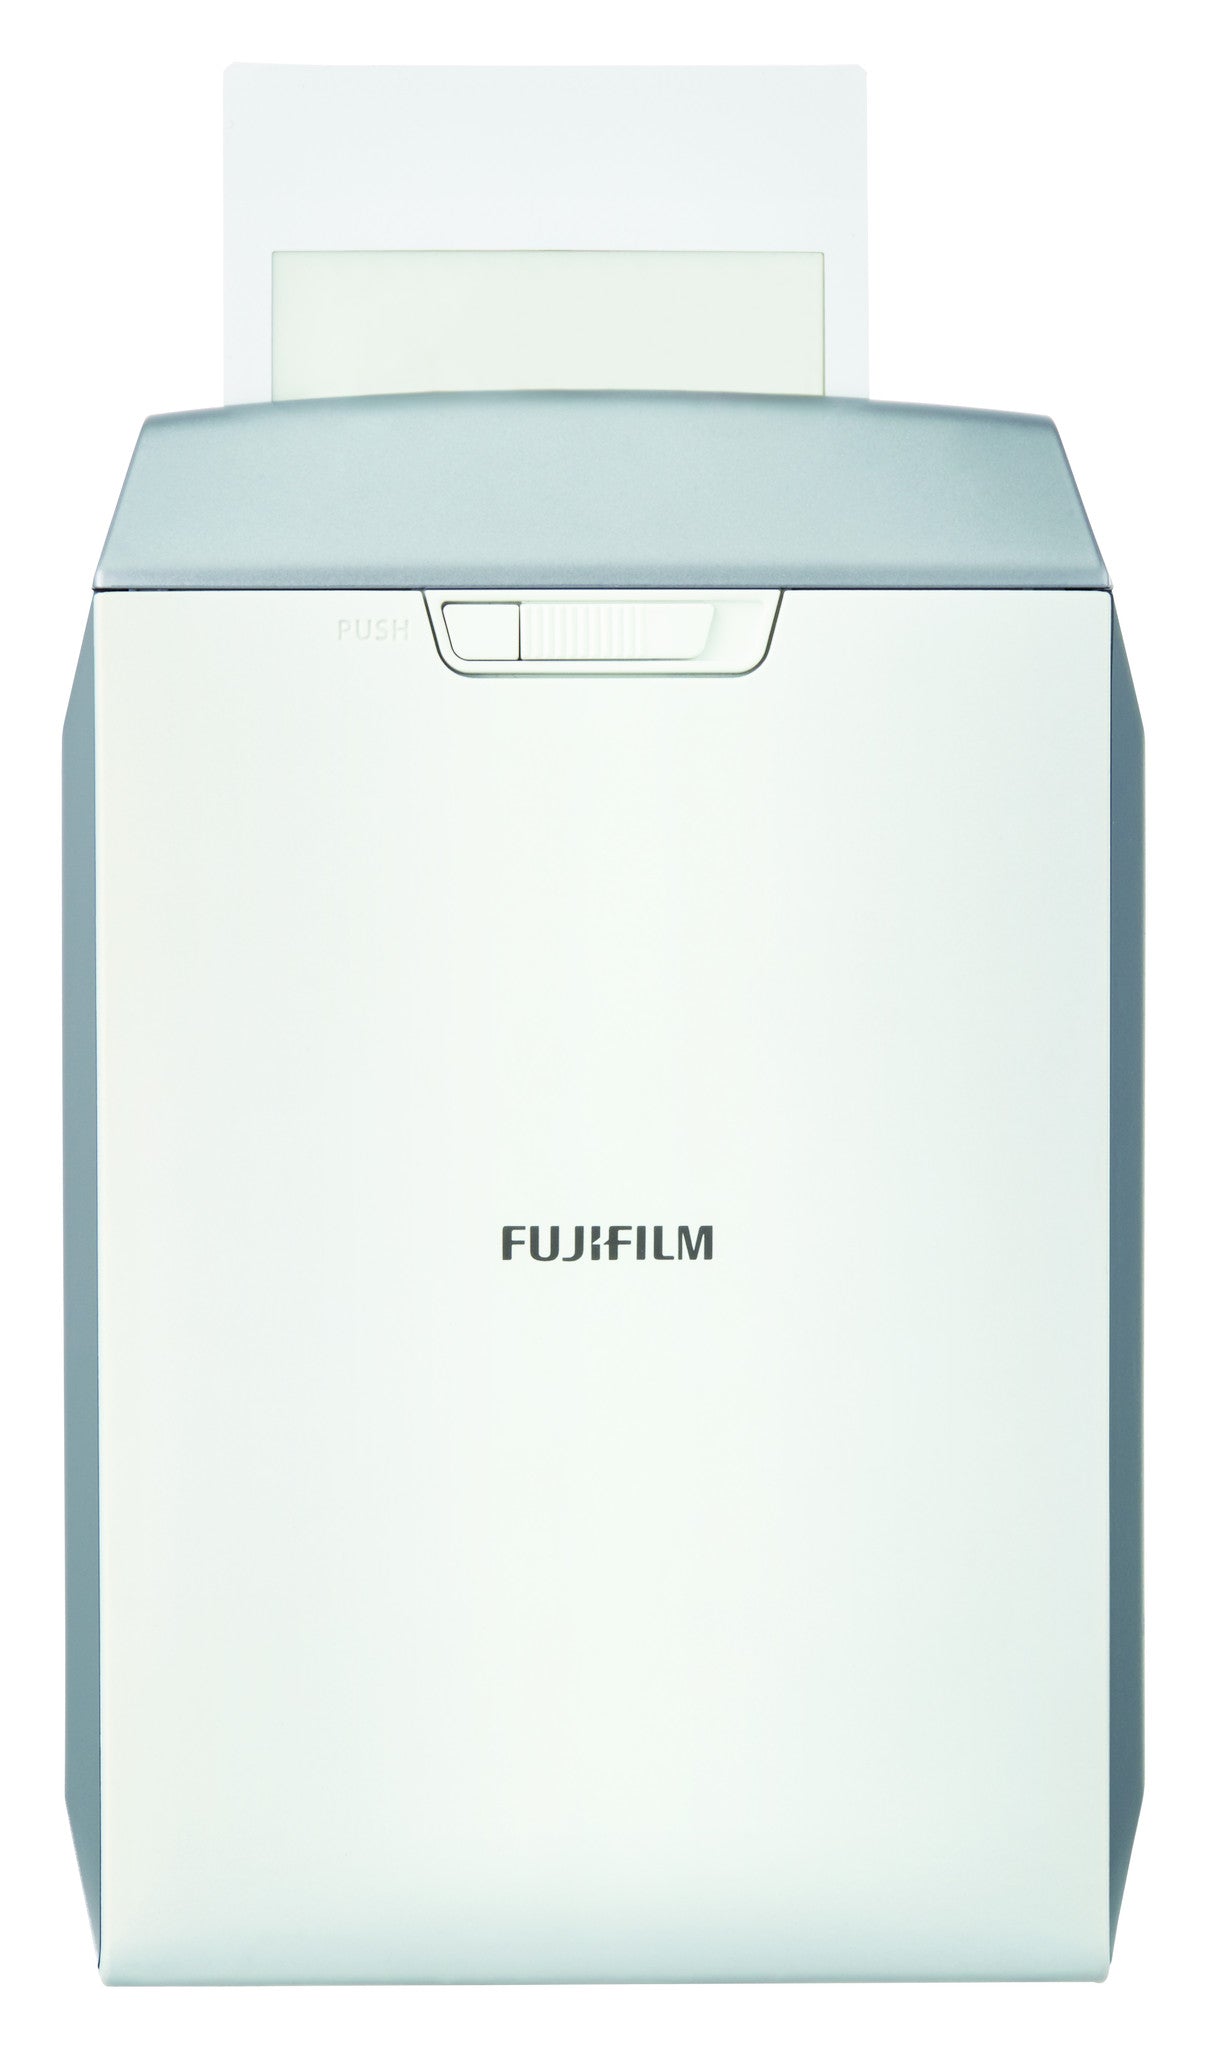 Fujifilm INSTAX Share Smartphone Printer SP-2 Silver, printers small format, Fujifilm - Pictureline  - 2